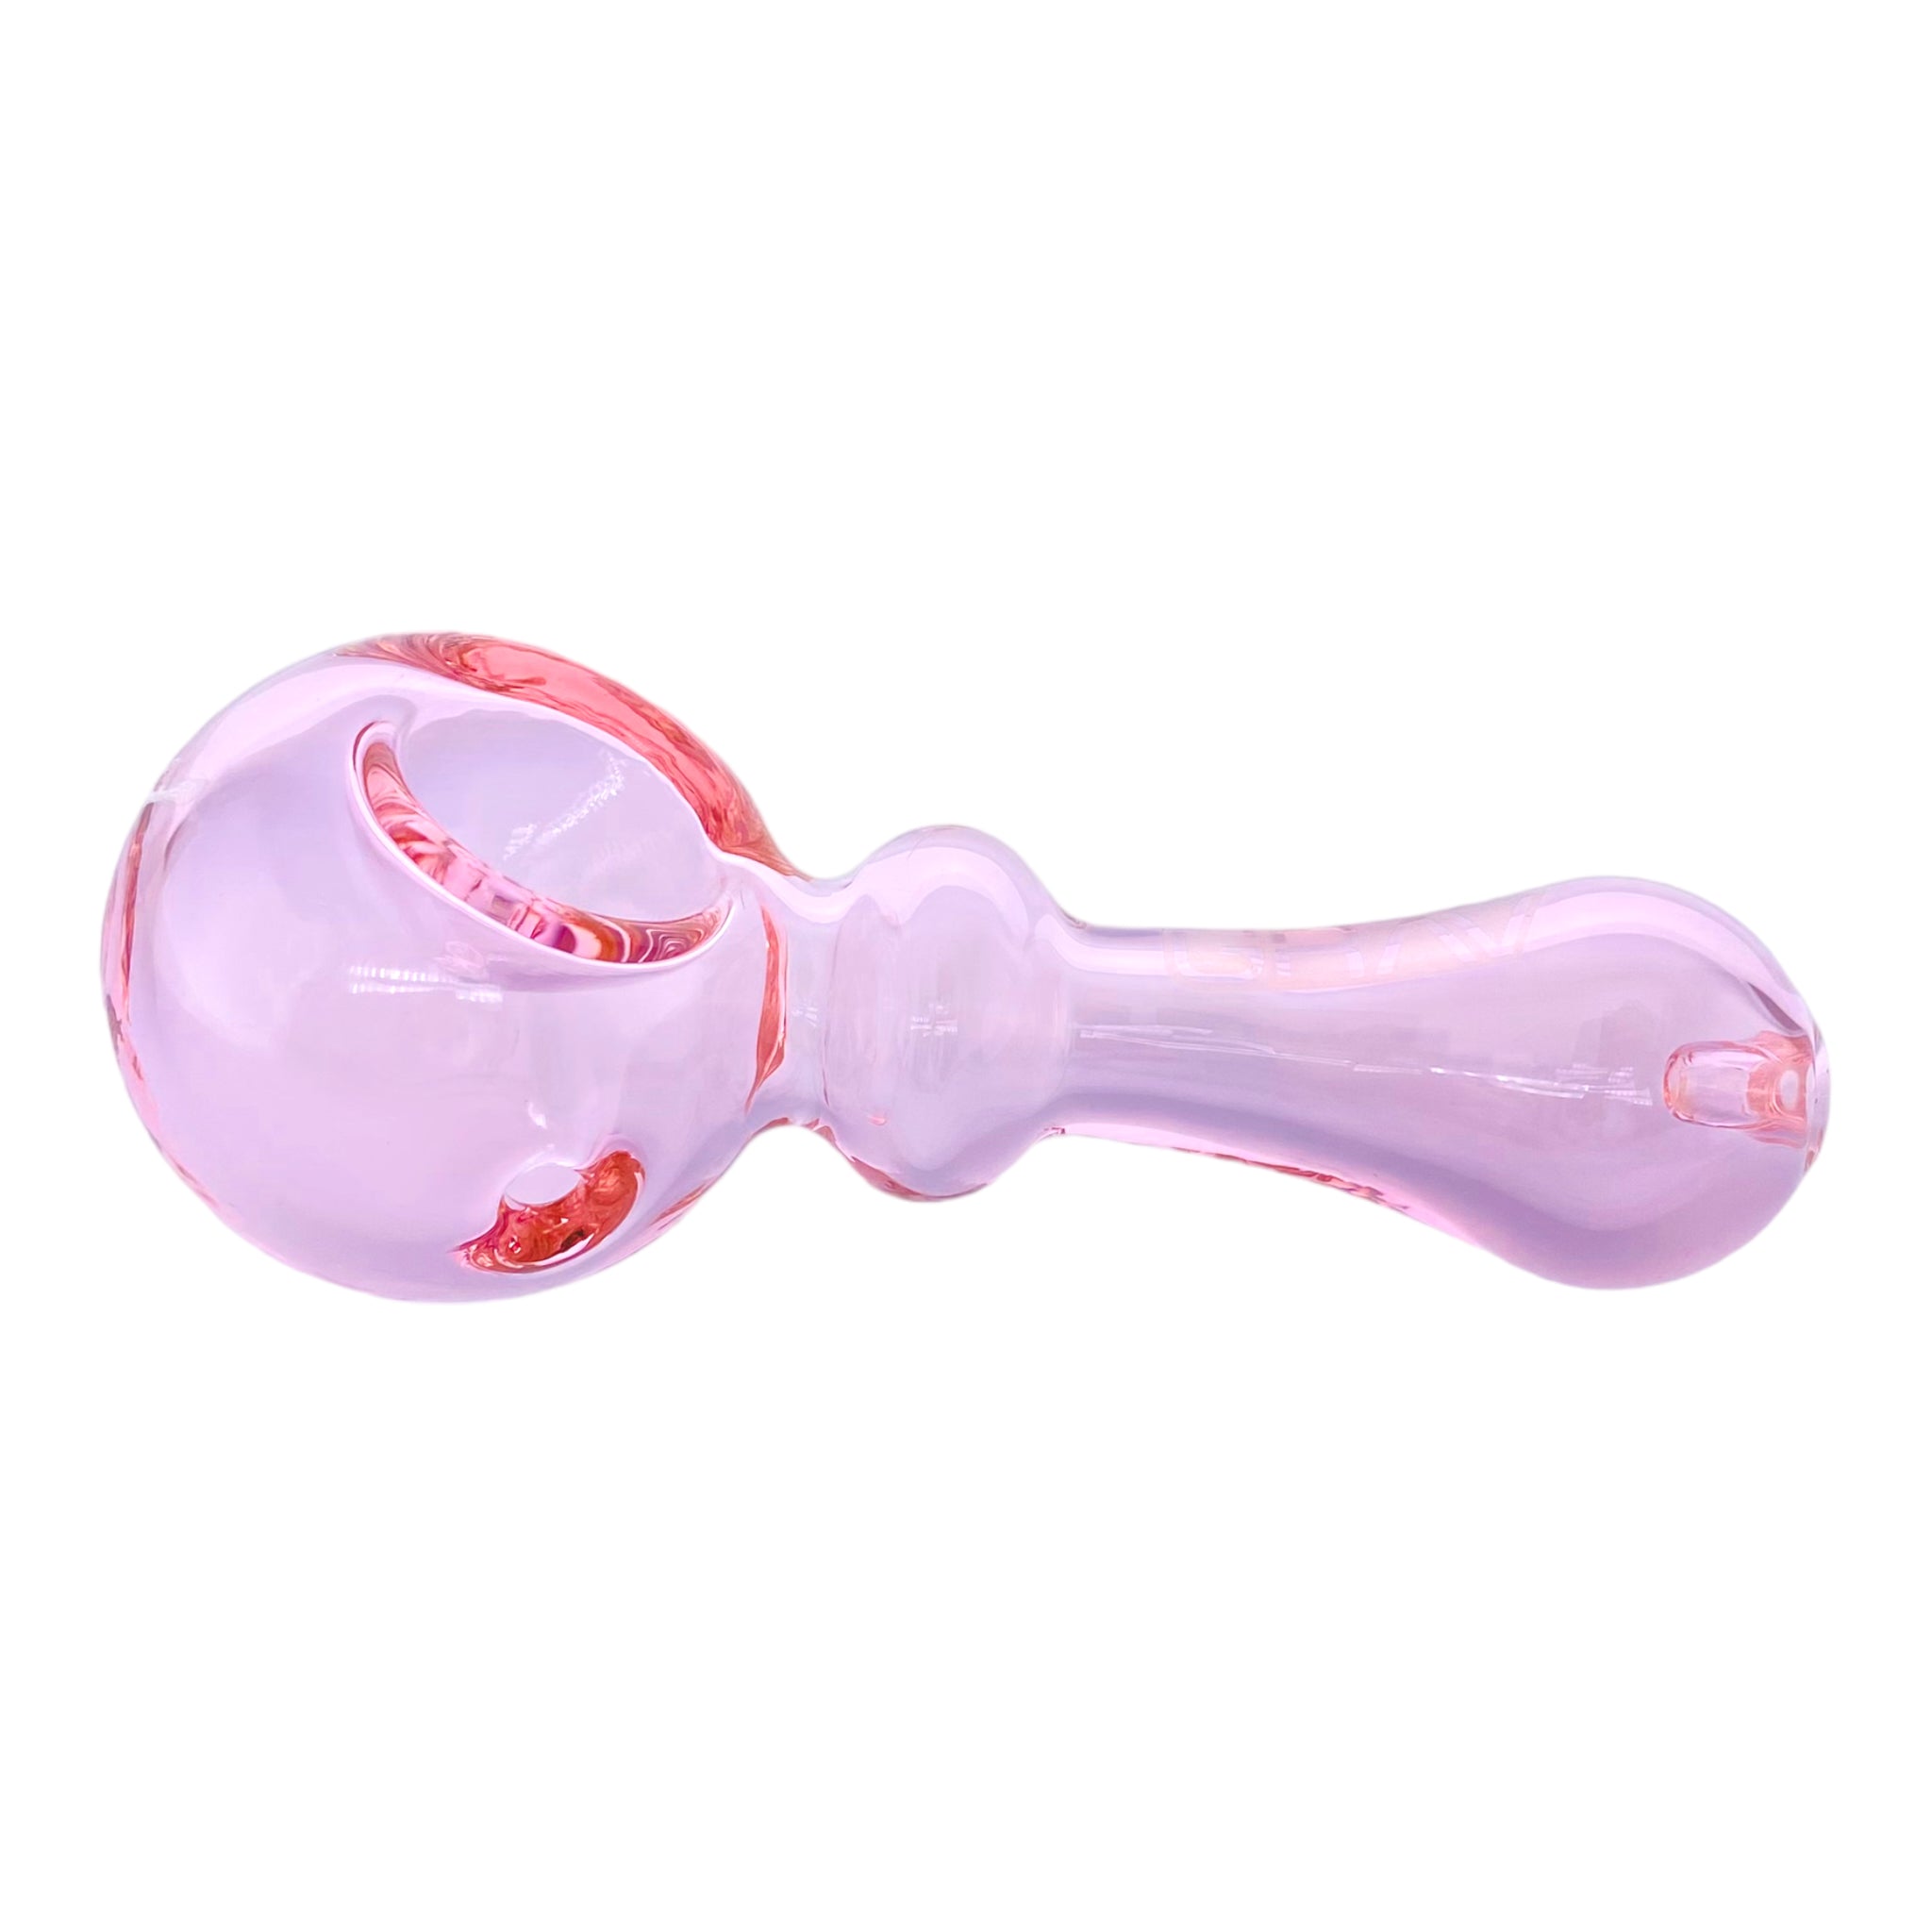 Grav Labs - Bauble Spoon Pipe - Pink